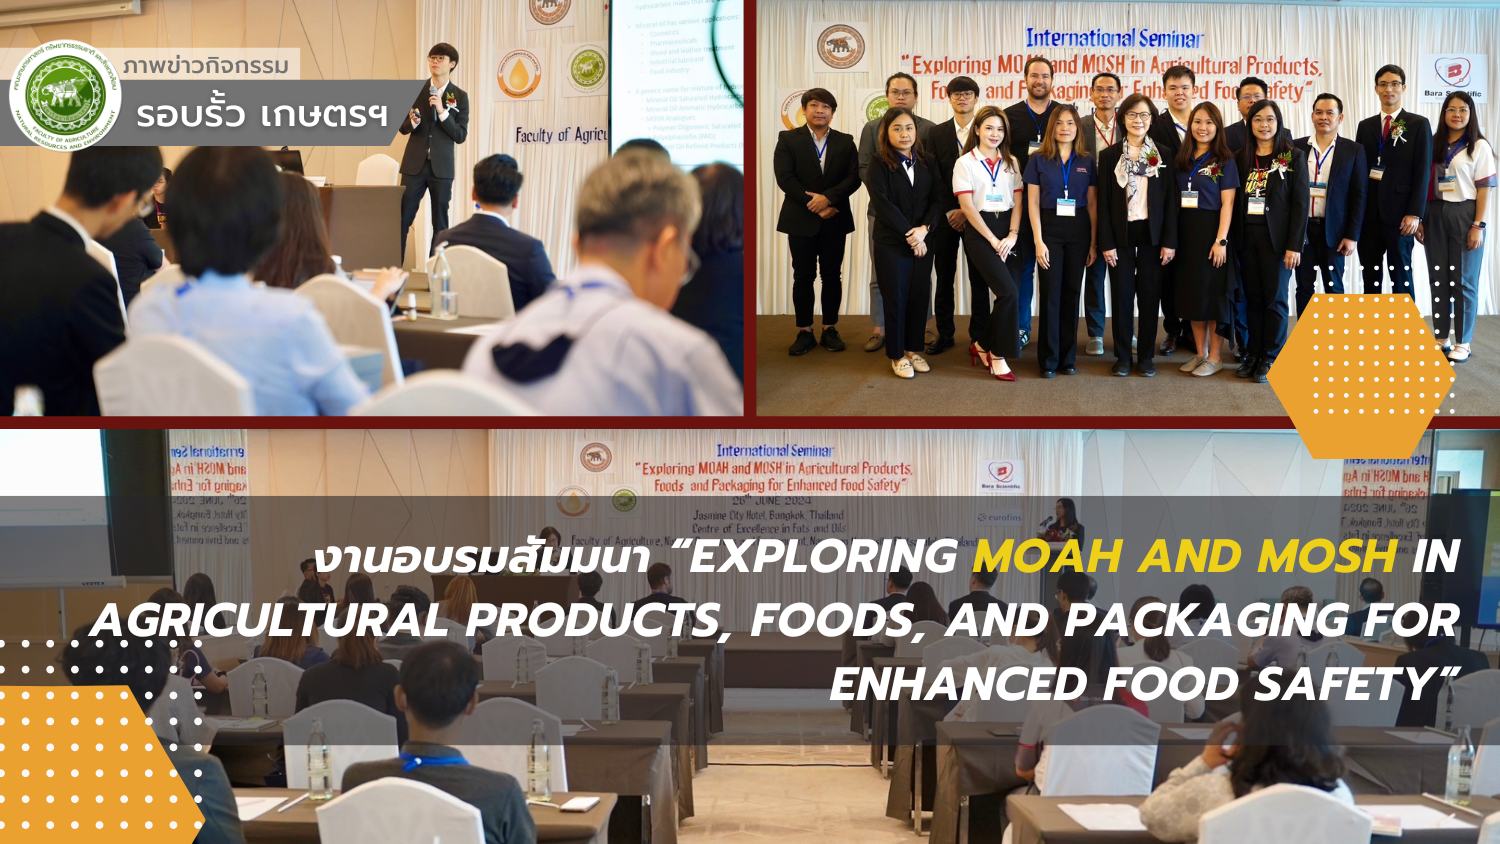 งานอบรมสัมมนา “Exploring MOAH and MOSH in Agricultural Products, Foods, and Packaging for Enhanced Food Safety”